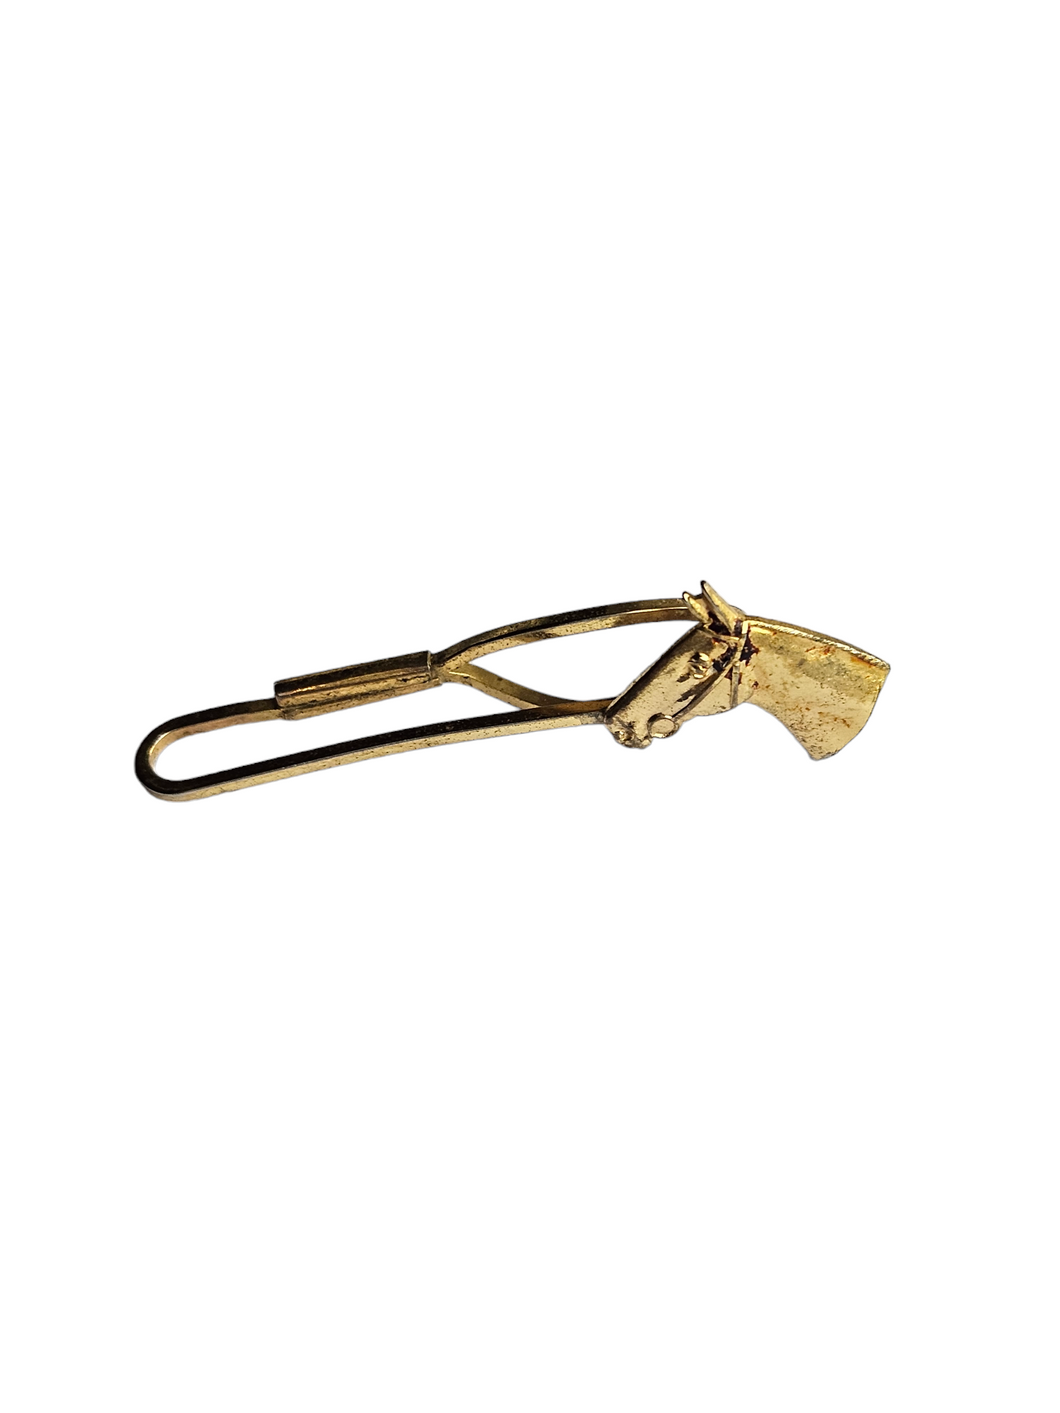 1930s Deco Gold Tone Horse Tie Pin